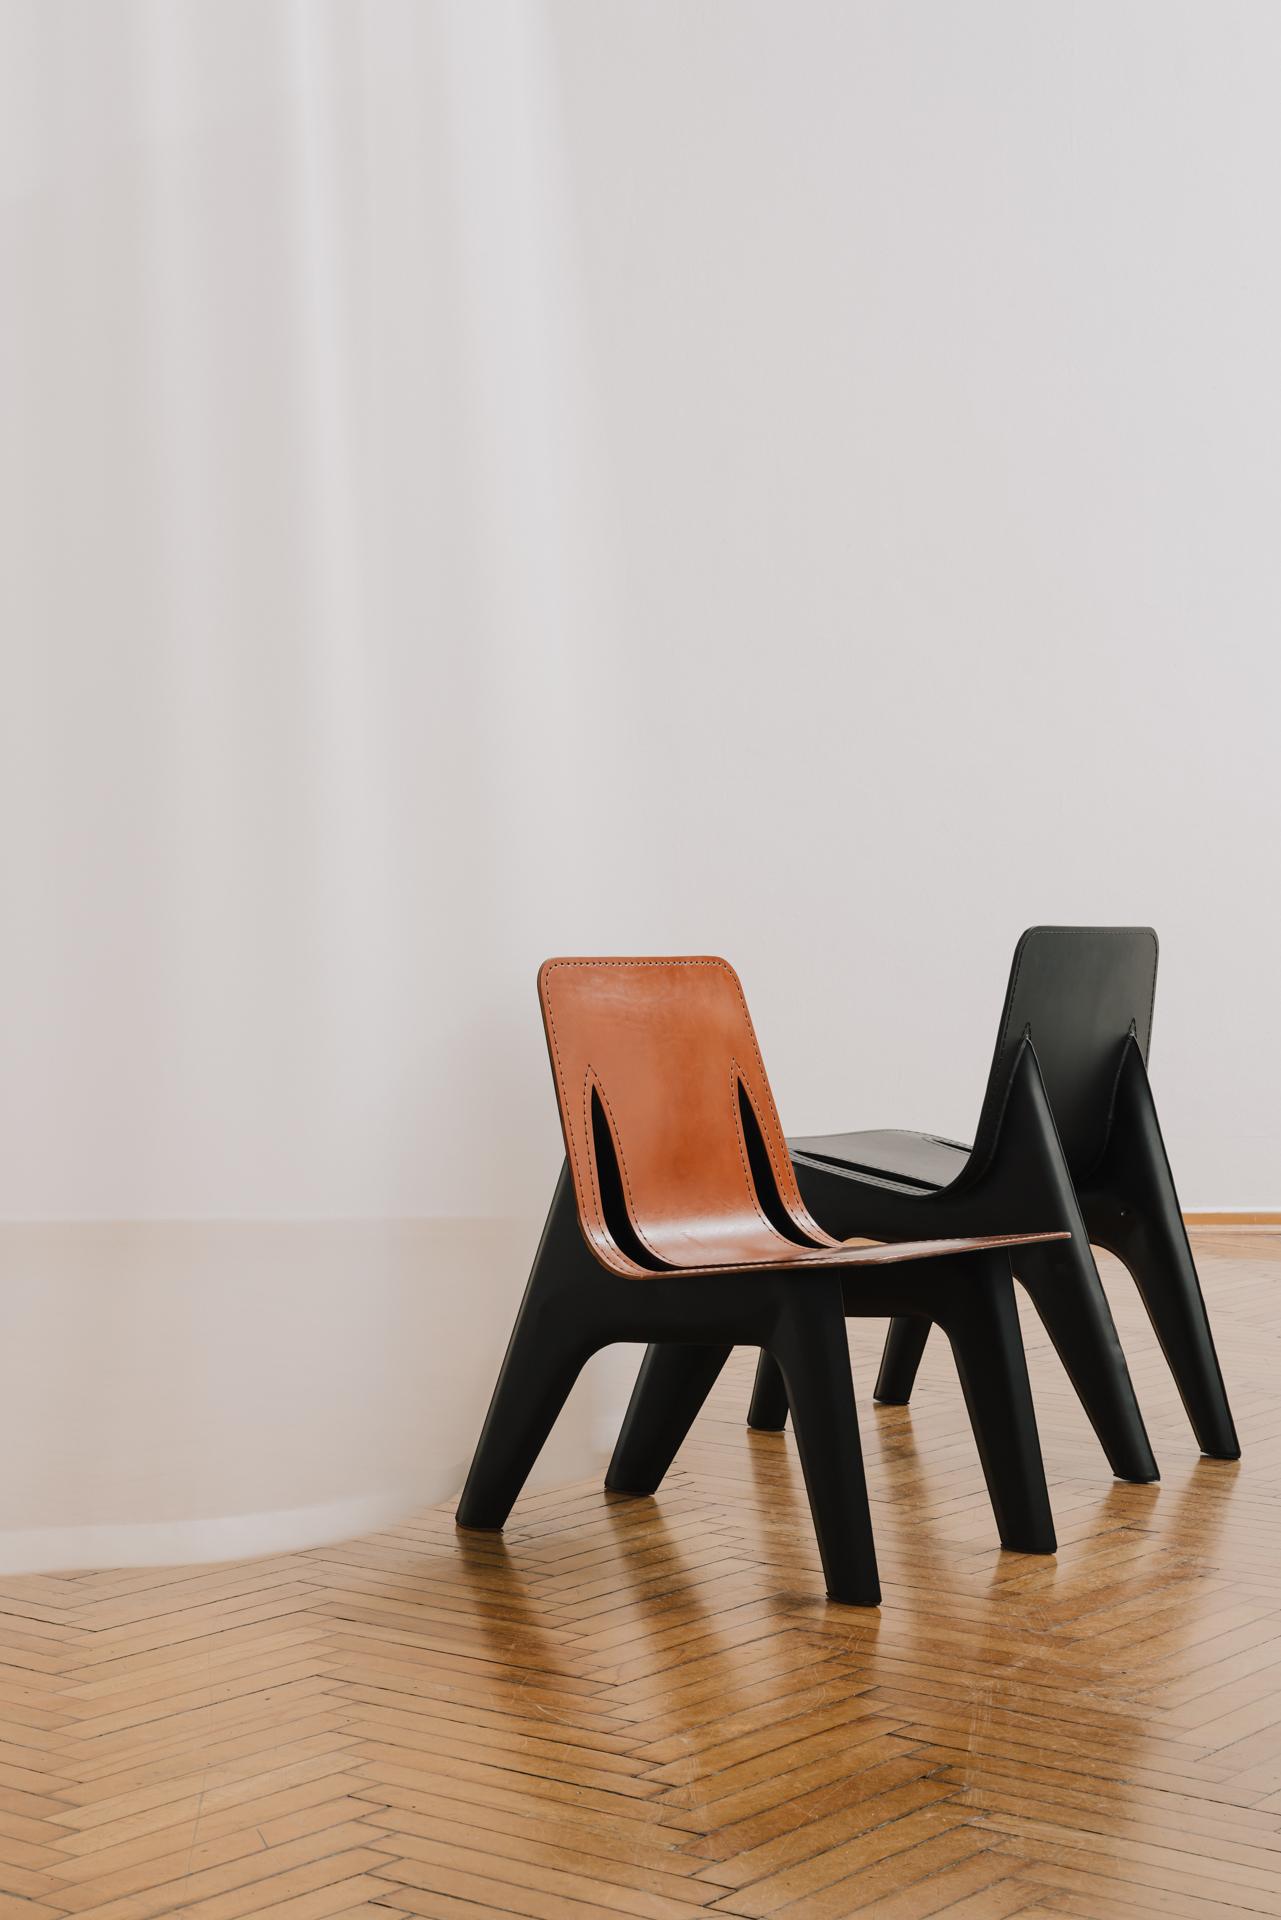 Loungesessel 'J-Chair' von Zieta

Leder Cognac
Graphitgrau Matt 7021 Aluminium

Abmessungen
Höhe: 76 cm
Breite: 53 cm
Tiefe: 74 cm
Gewicht: 5 kg

Ein aussagekräftiges FiDU-Manifest. Ein visuell starkes Objekt mit ikonischem Charakter, das auf einer